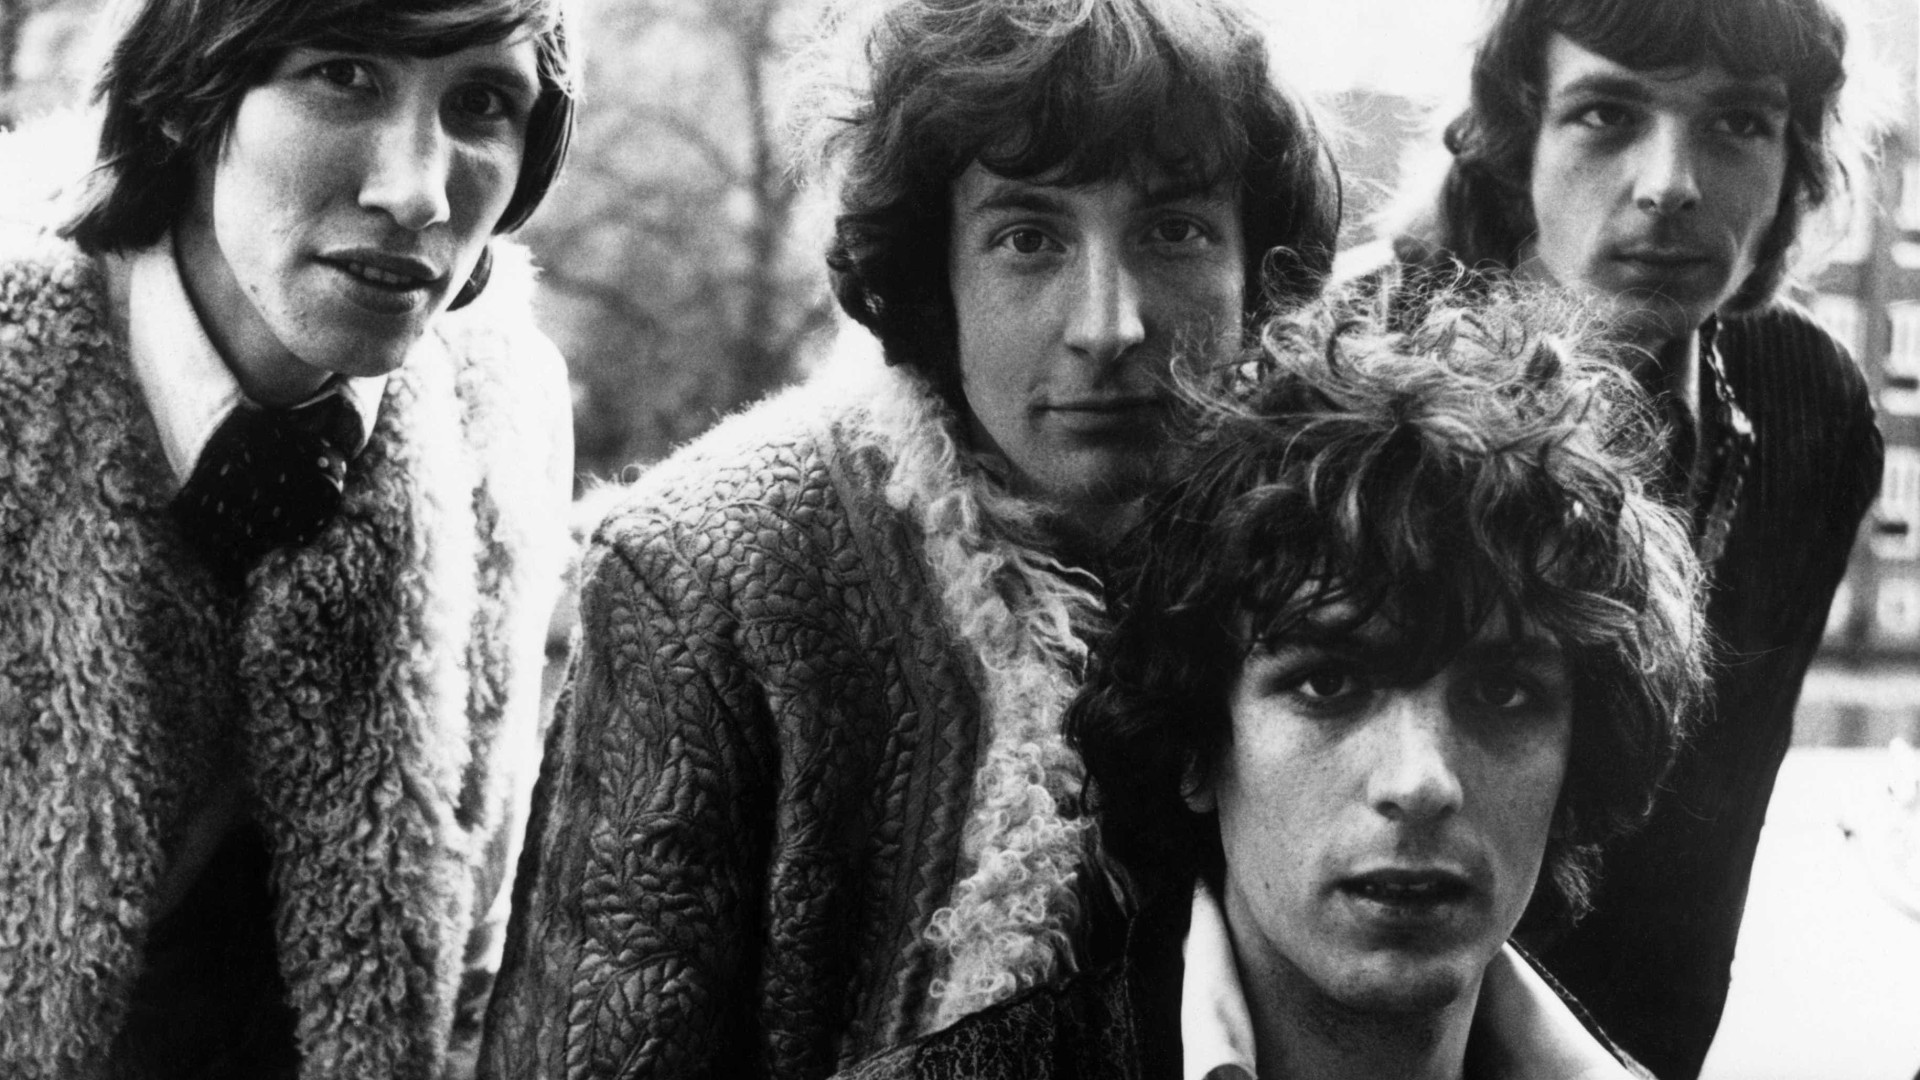 Música inédita do Pink Floyd gravada em 1967 
foi divulgada nesta sexta